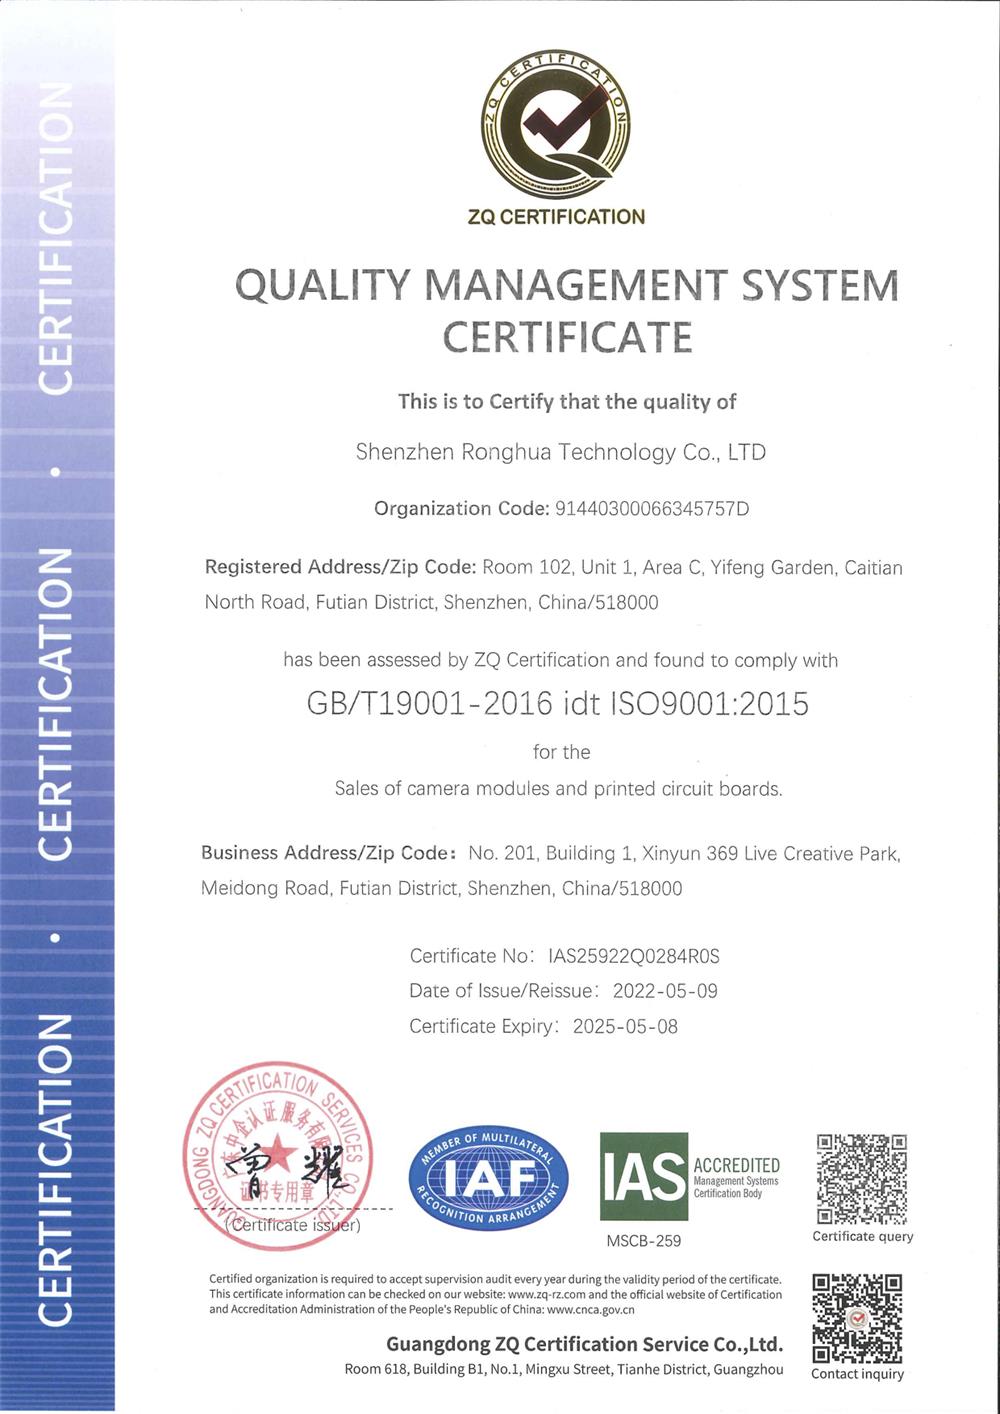 शेन्झेन रोंगहुआ तंत्रज्ञान ISO9001